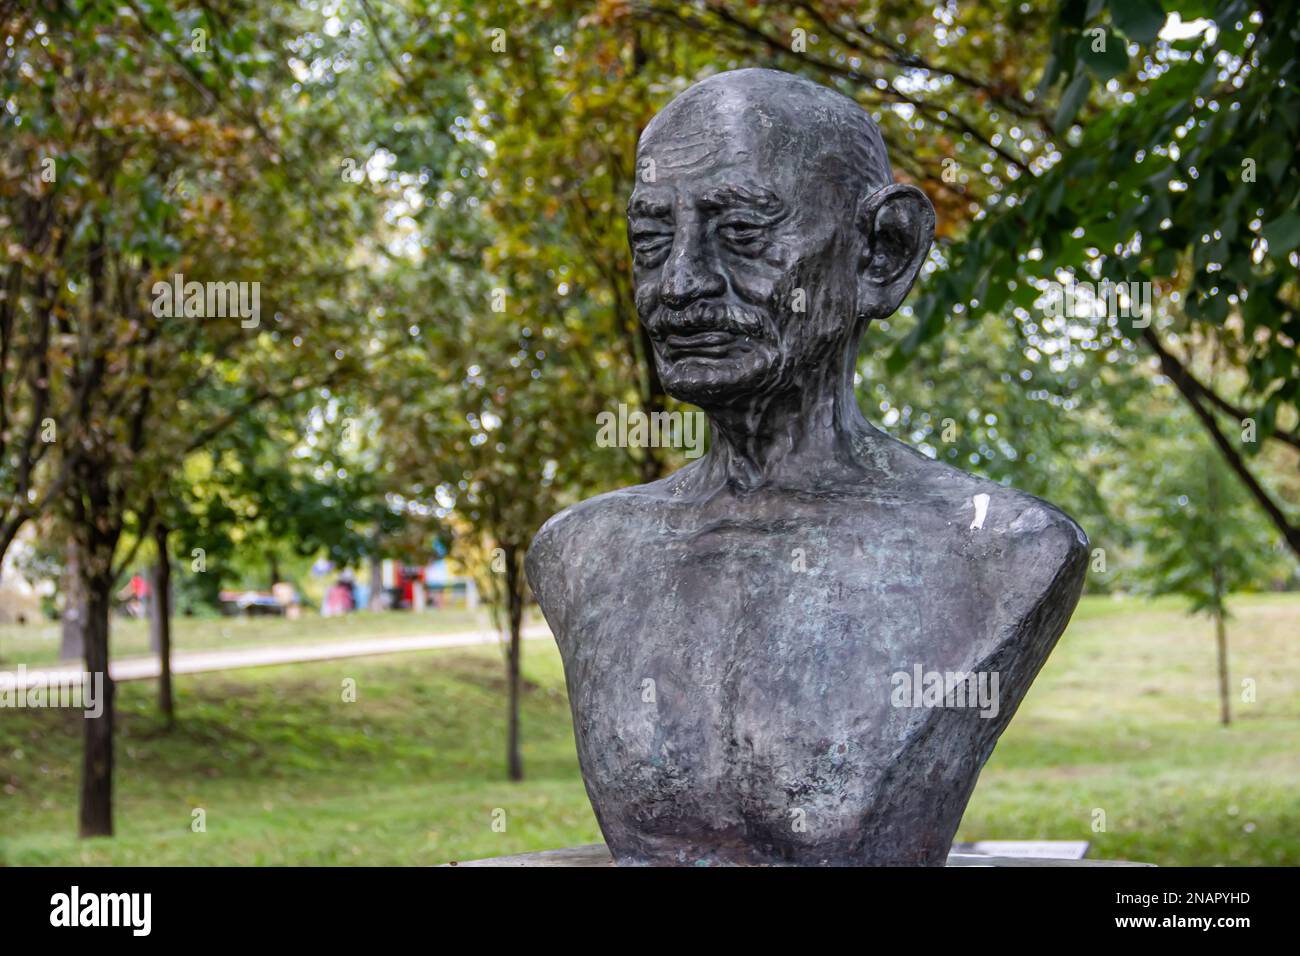 Statue von Mahatma Gandhy, Schöpfer der weltweiten Bewegung des gewaltfreien Widerstands, im öffentlichen Park in Belgrad, Serbien. Stockfoto